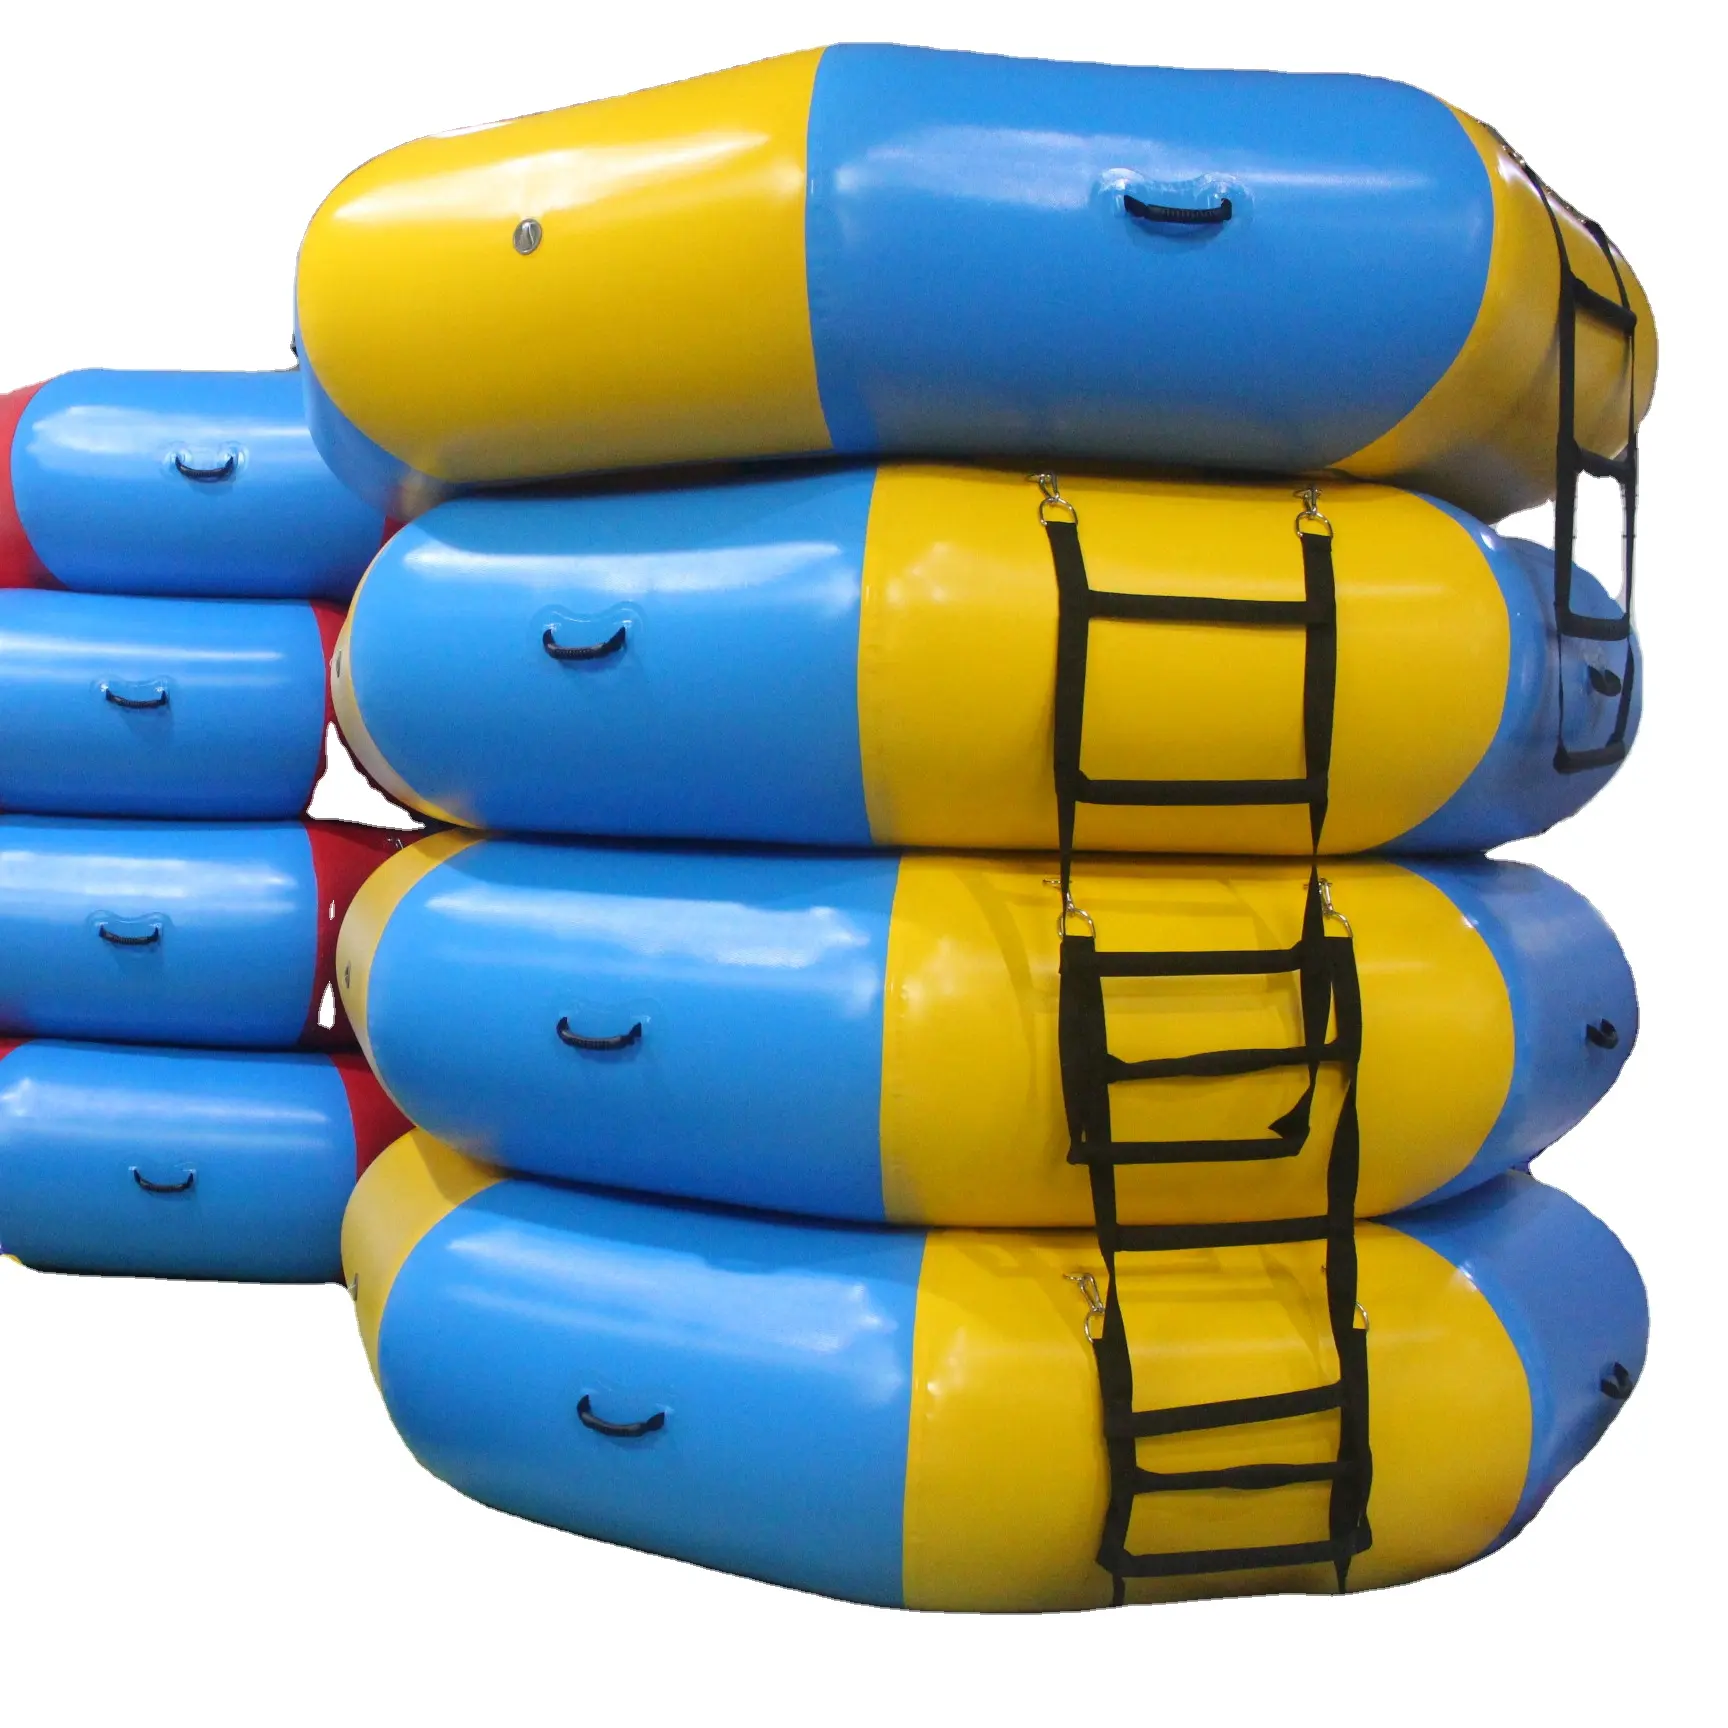 Caminhão inflável de água flutuante, comercial, durável, pular para crianças e adultos